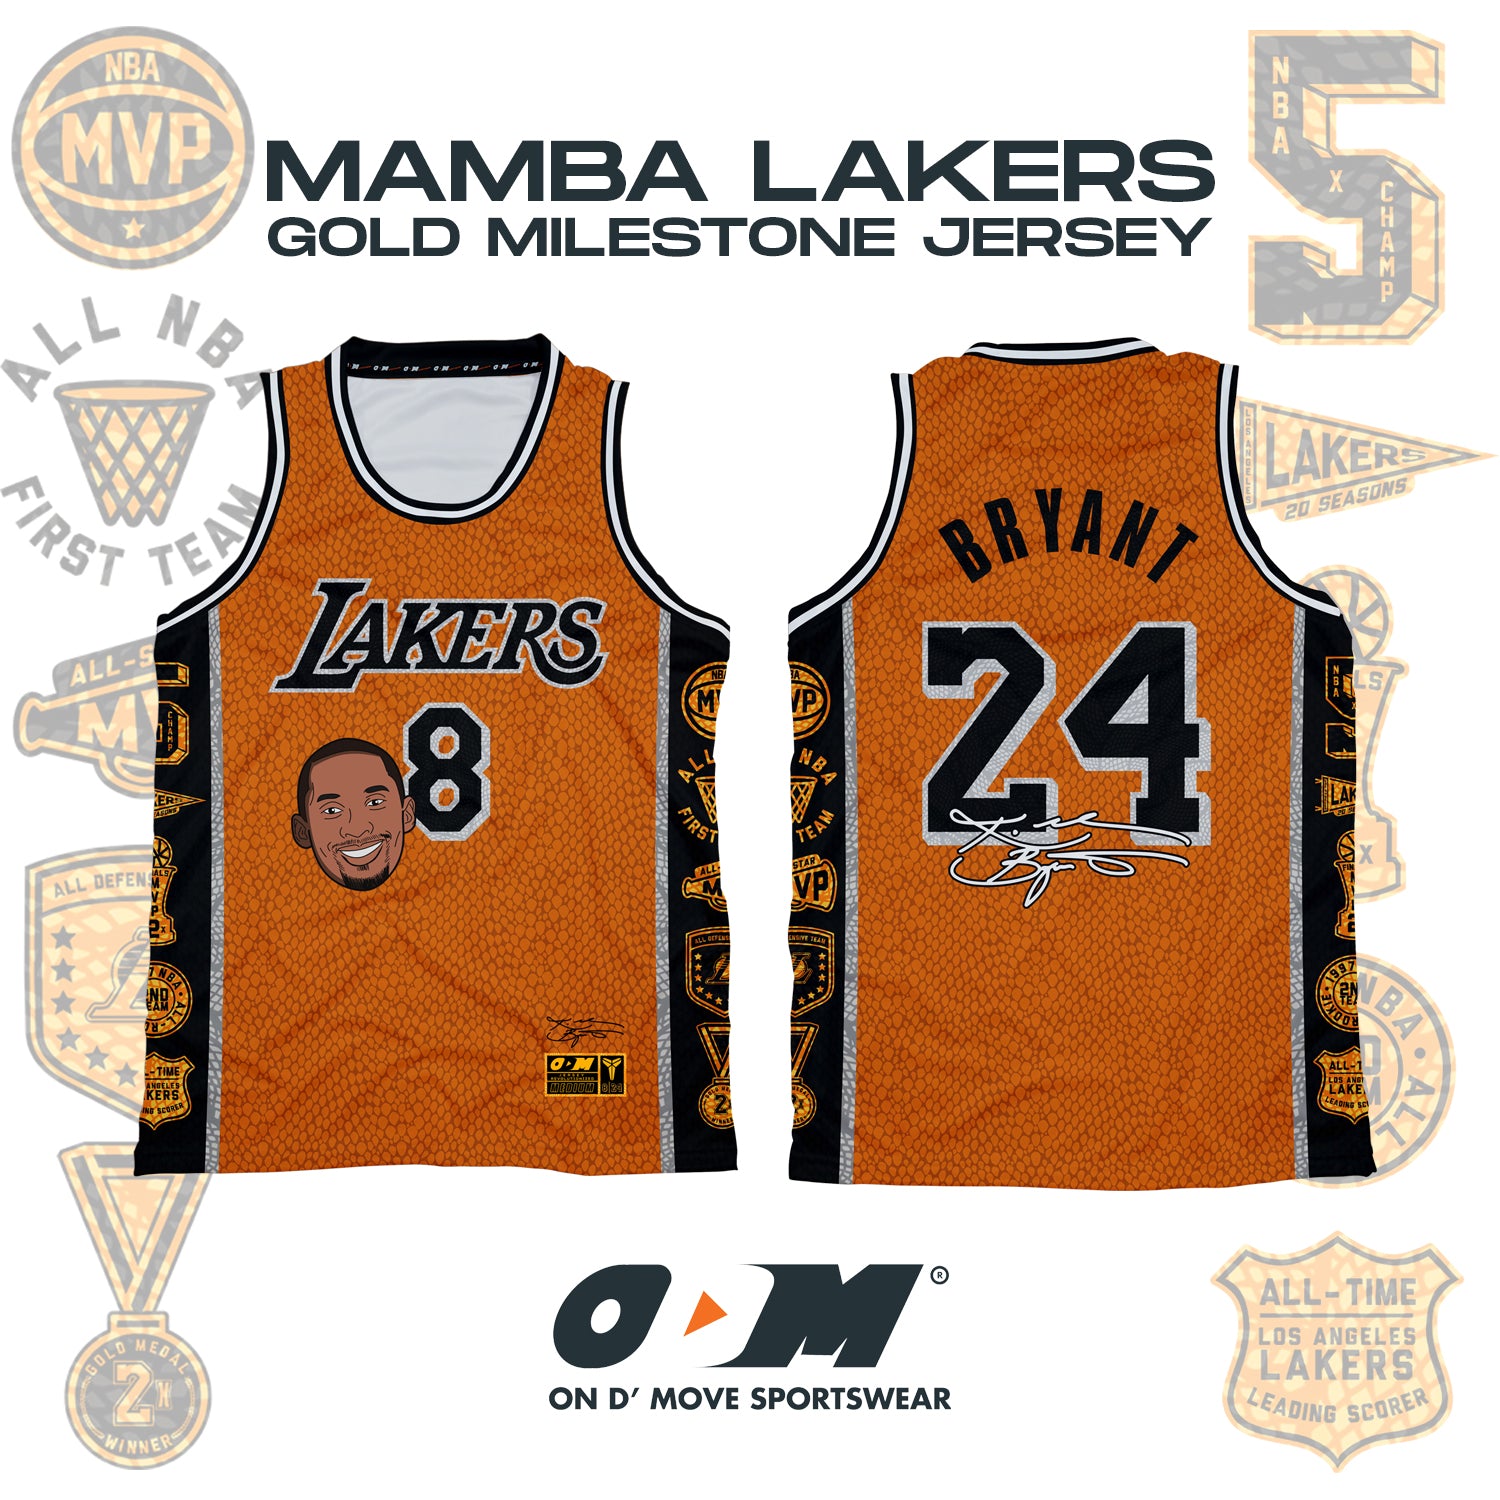 Mamba Lakers Gold Milestone Jersey